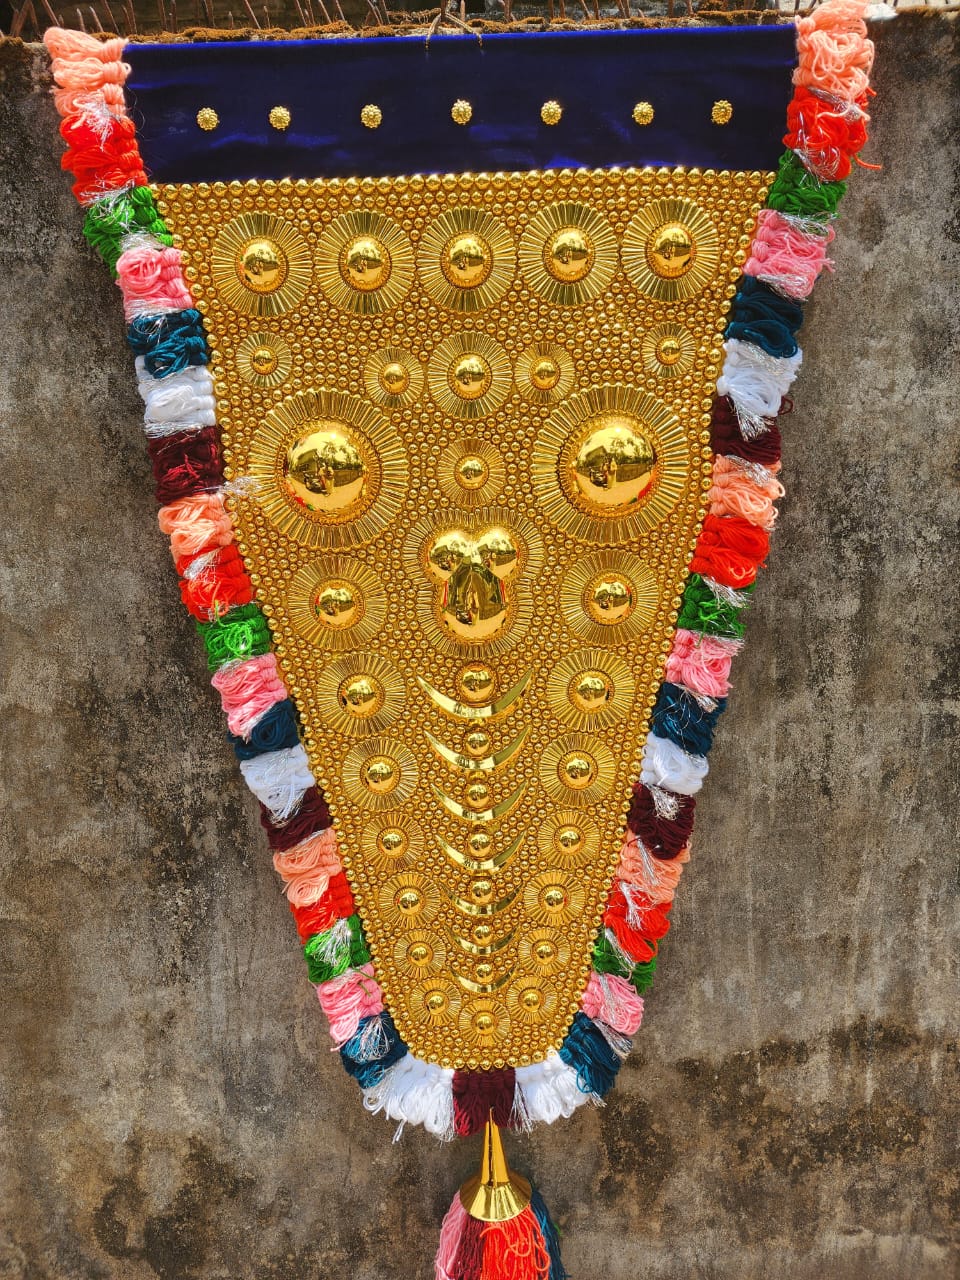 Mannar Craft Full Golden Work Nettipattam (Hand Made Elephant Caparison) - 2 Feet